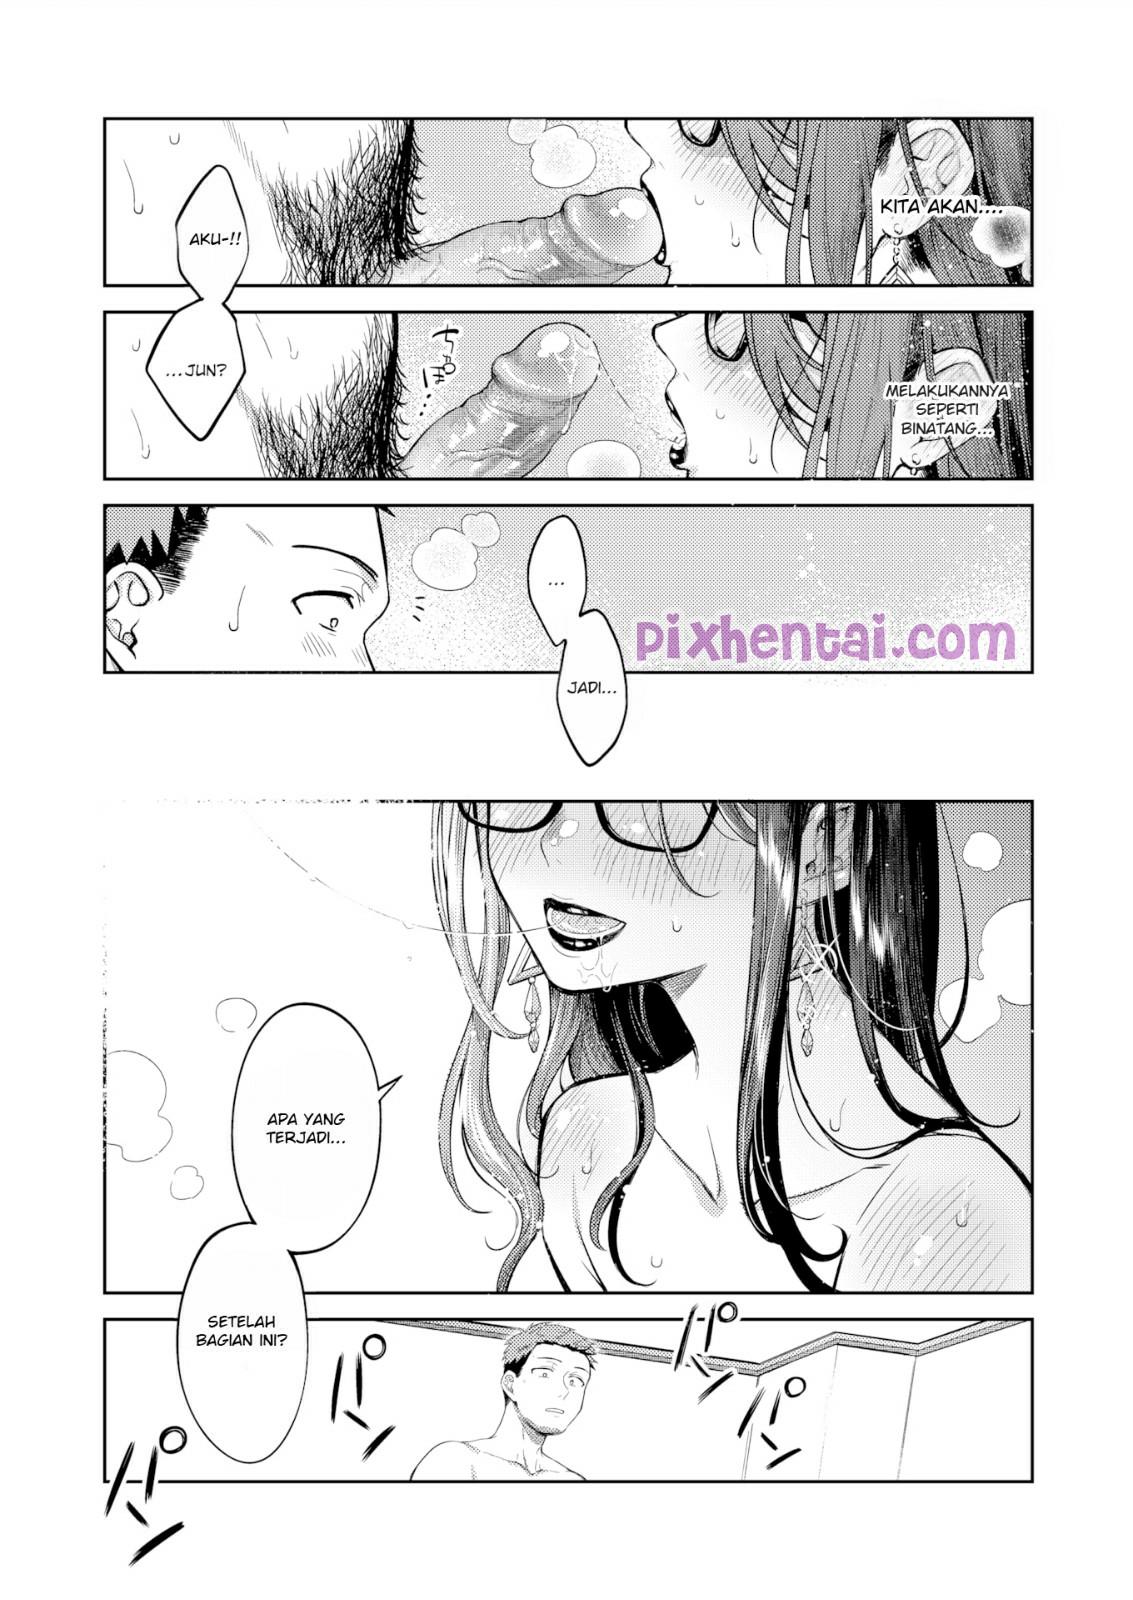 Komik hentai xxx manga sex bokep ngesex lagi bersama mantan pacar 13